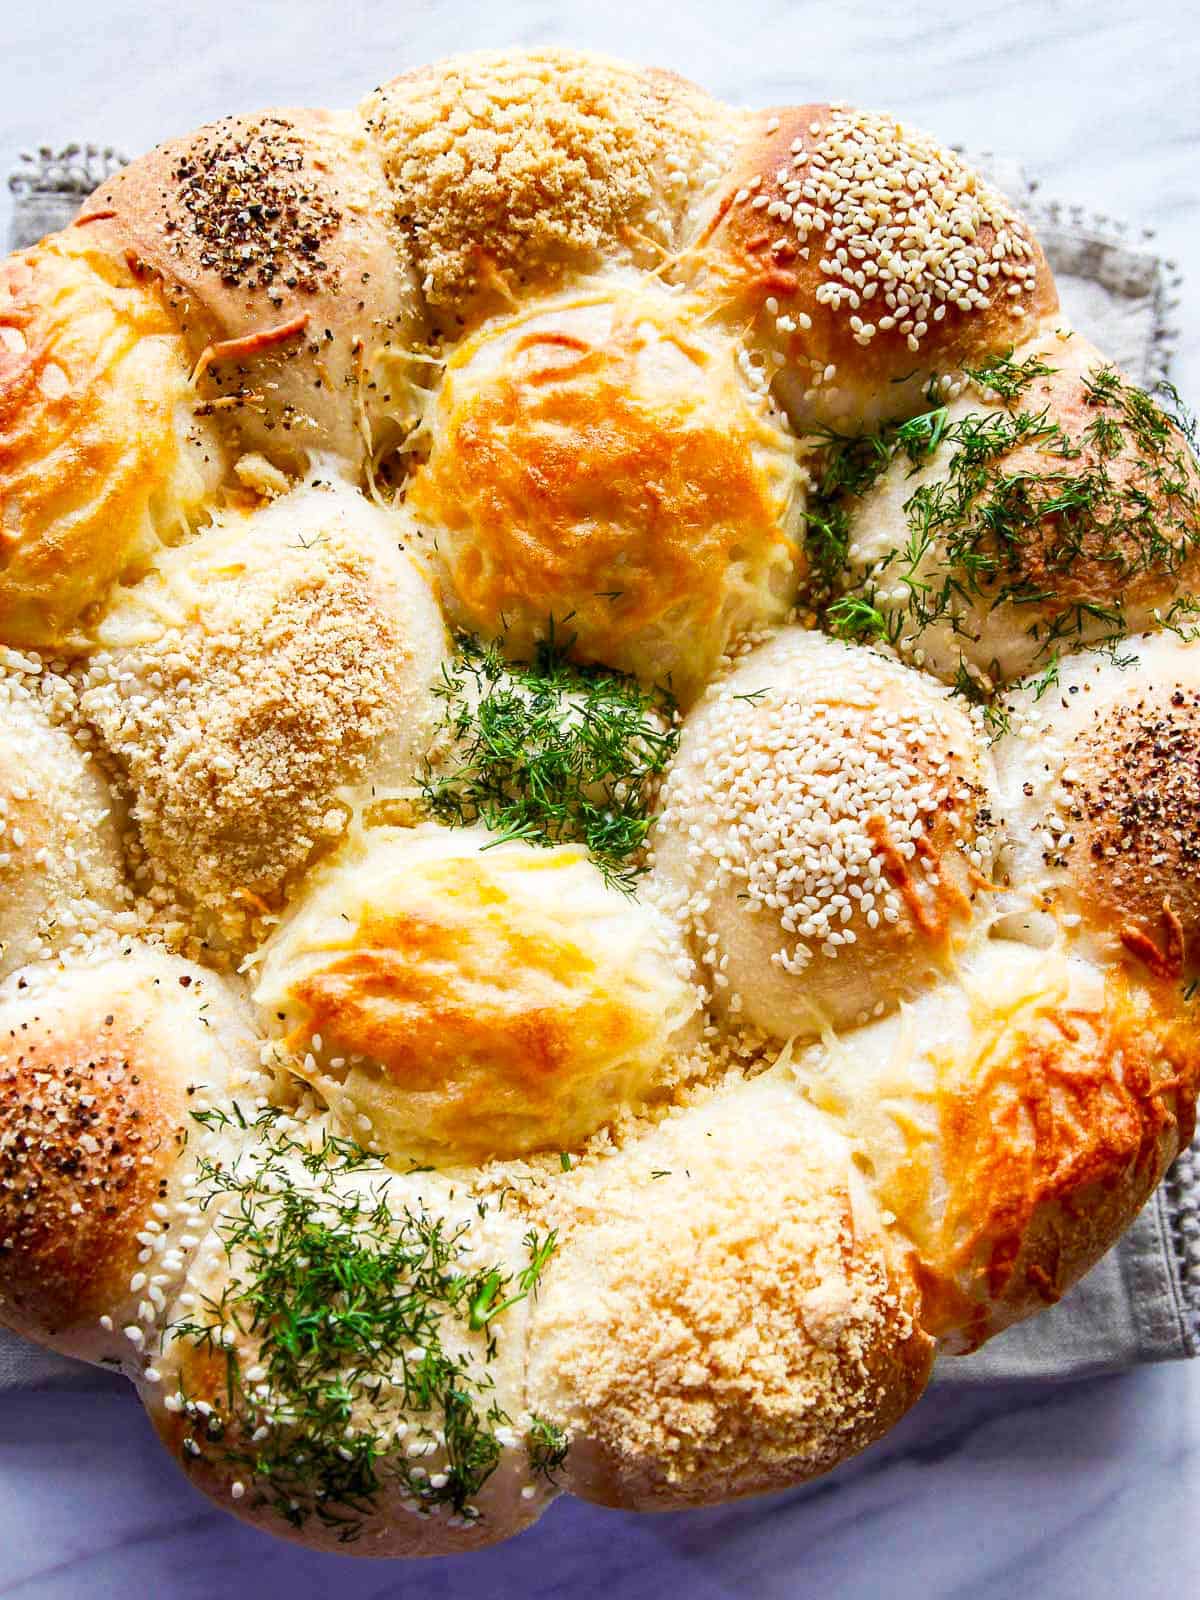 Sour Cream & Chive Potato Bread or Rolls Recipe